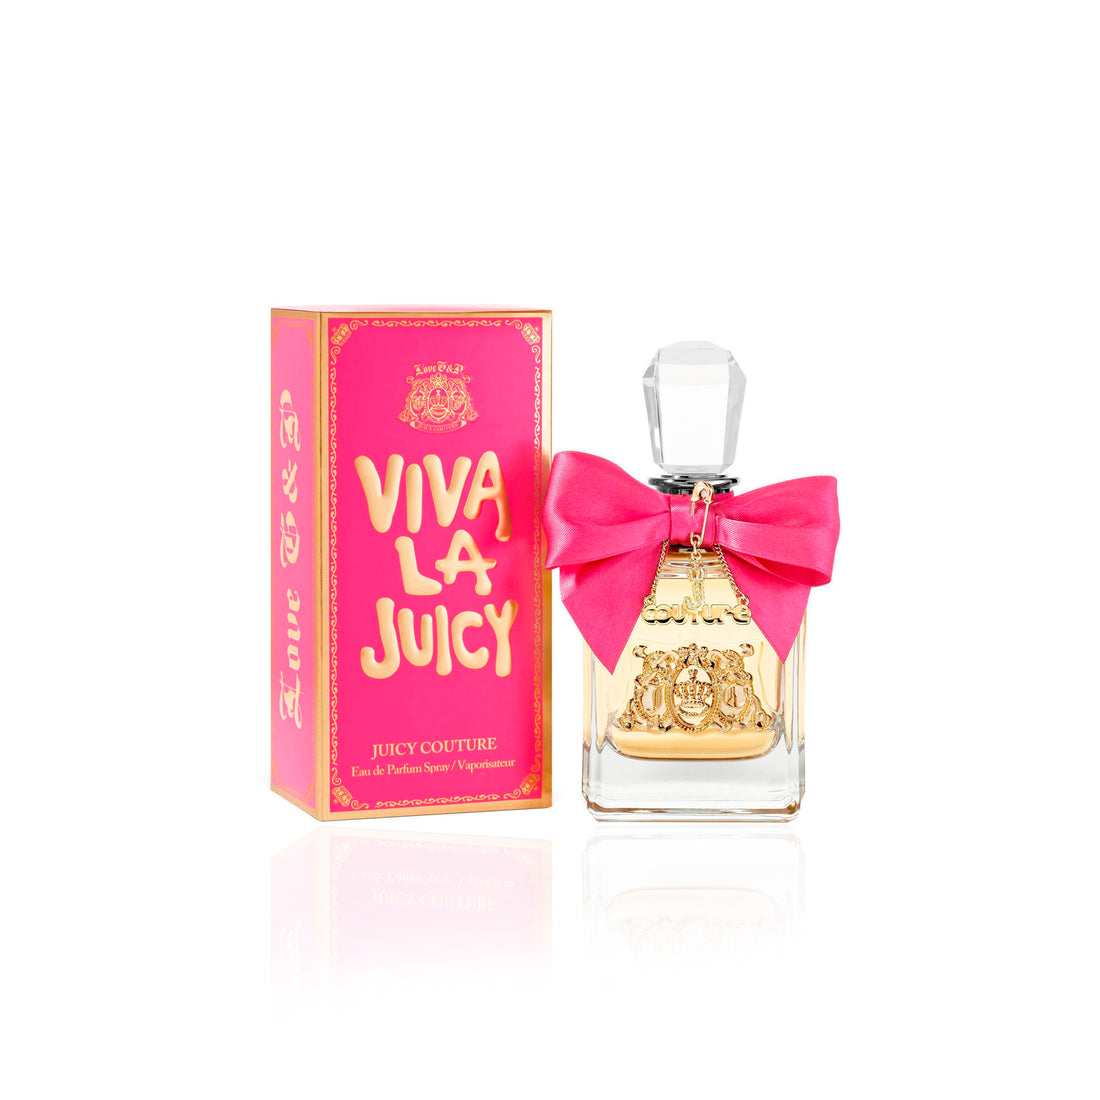 Juicy Couture Viva La Juicy Eau De Parfum Vaporizer 50 Ml